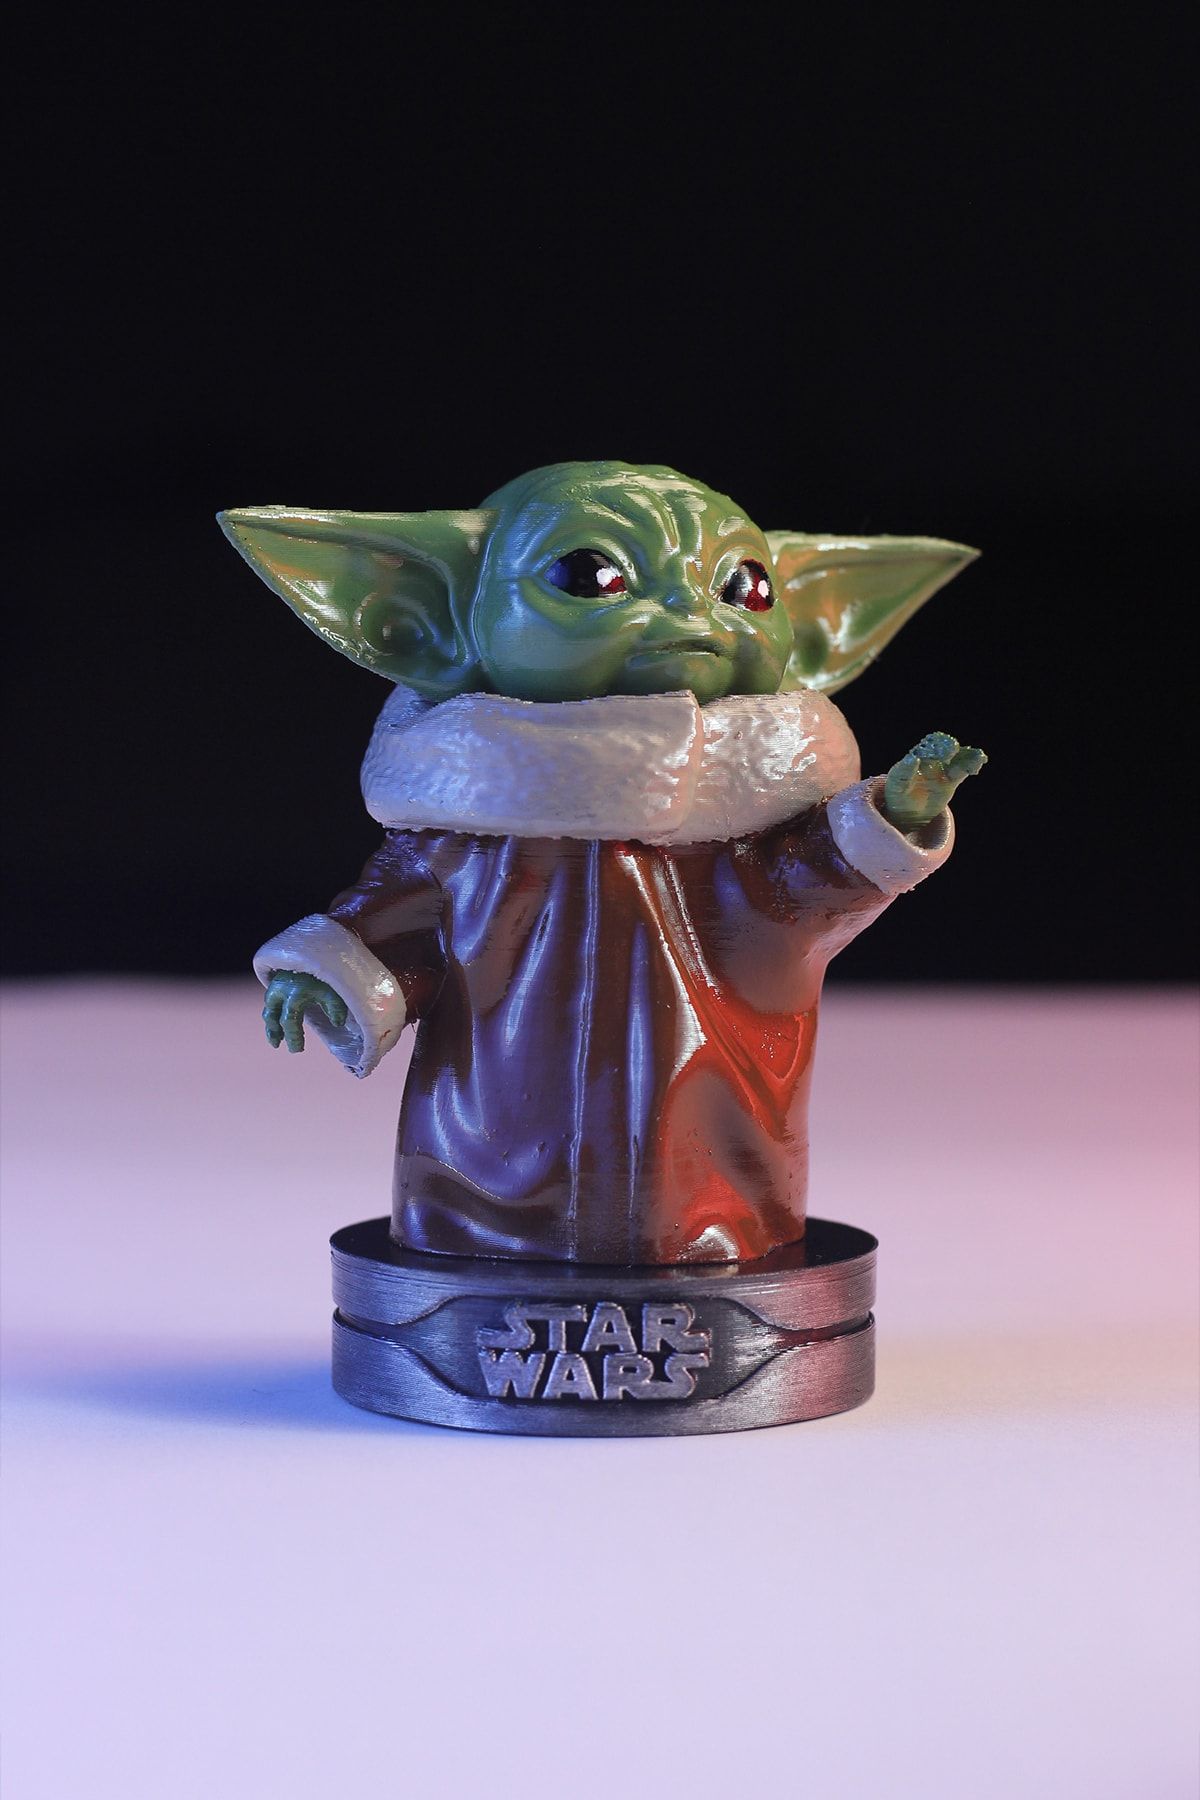 GÜRCÜ 3D Baby Yoda Figürü - Star Wars Grogu - The Mandalorian - 10 Cm